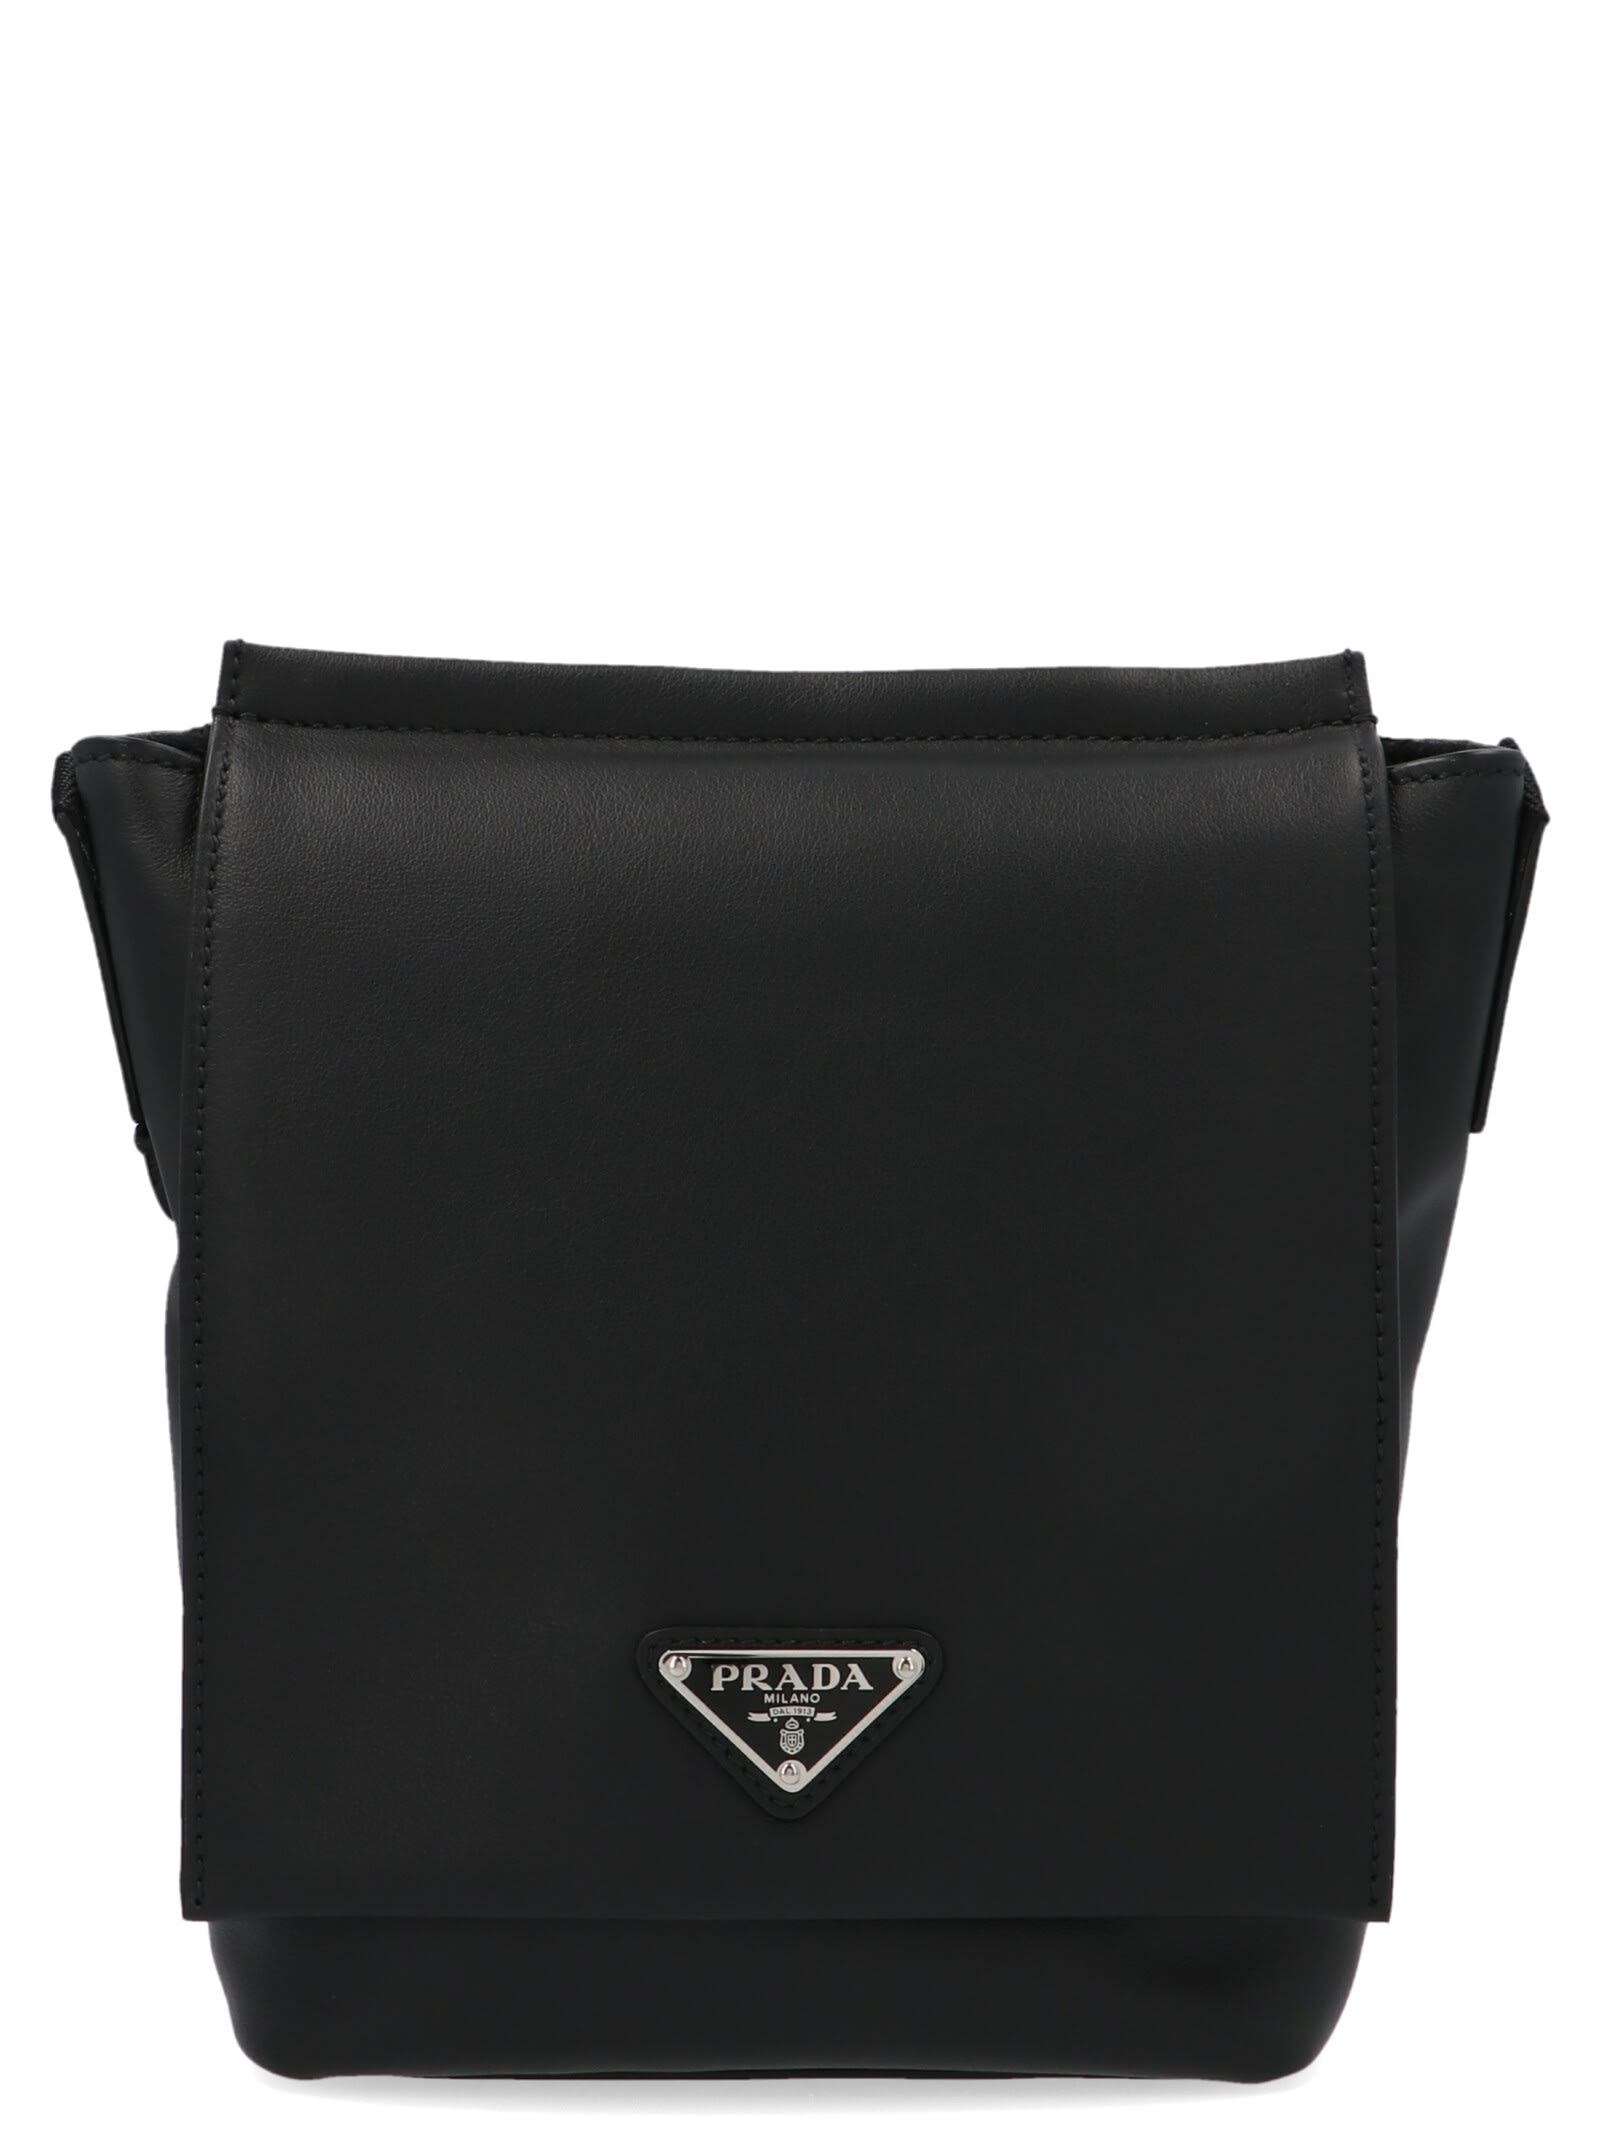 Prada Bag In Black